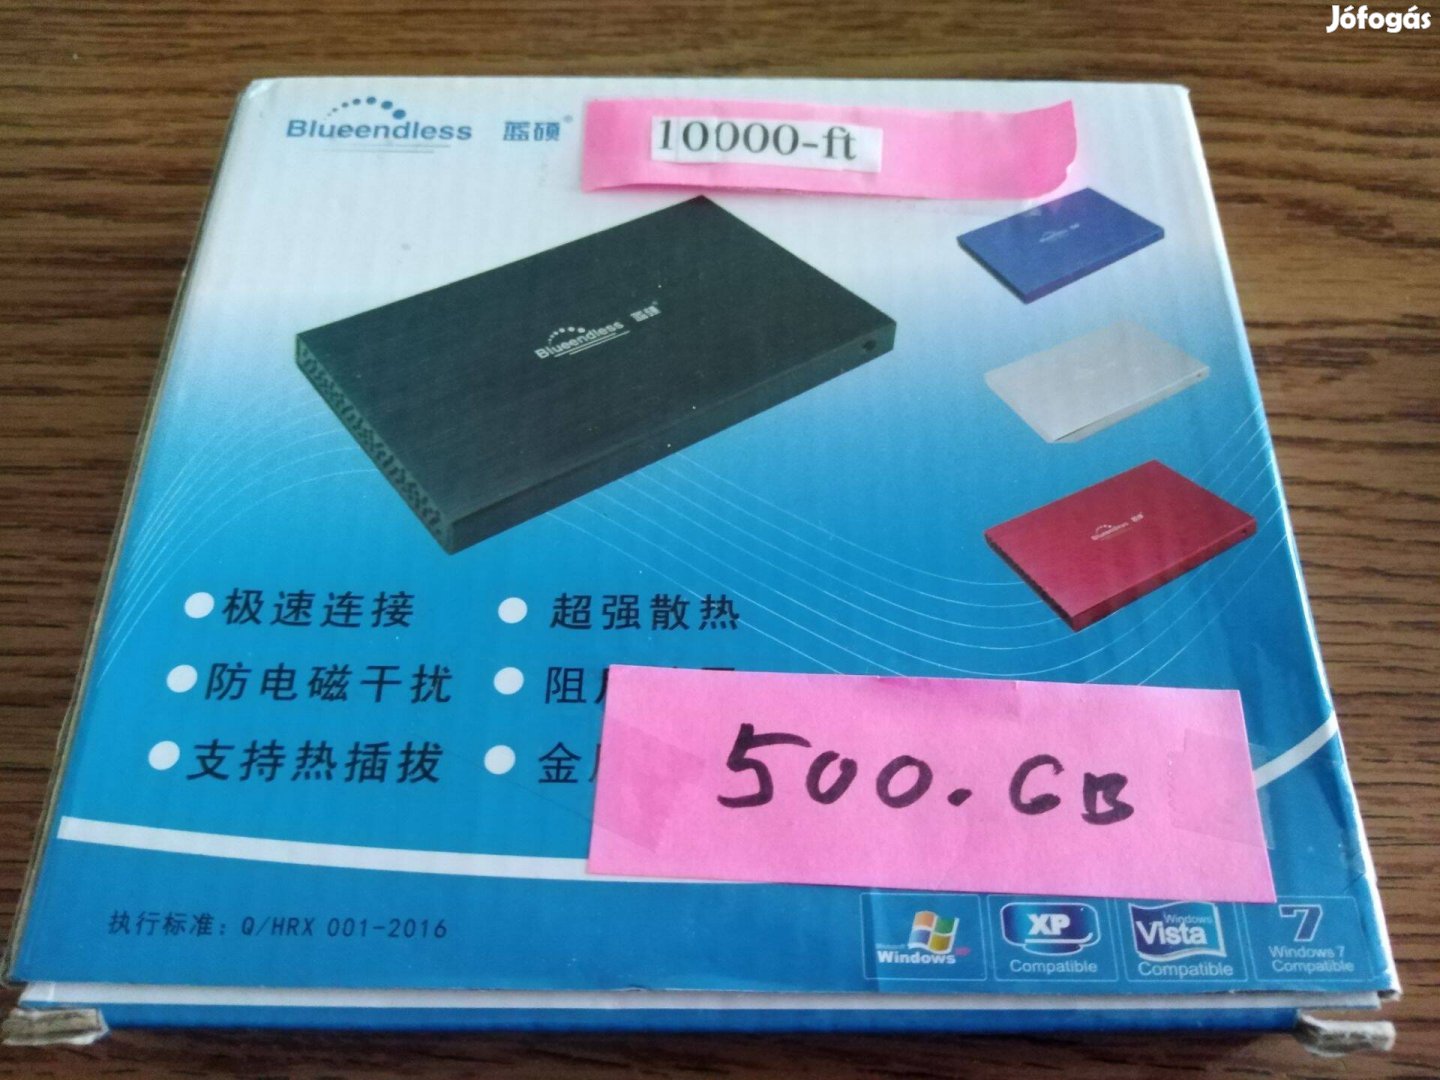 TOSHIBA Külsö Merevlemez -500,GB-nagyon jo és gyors-7000FT